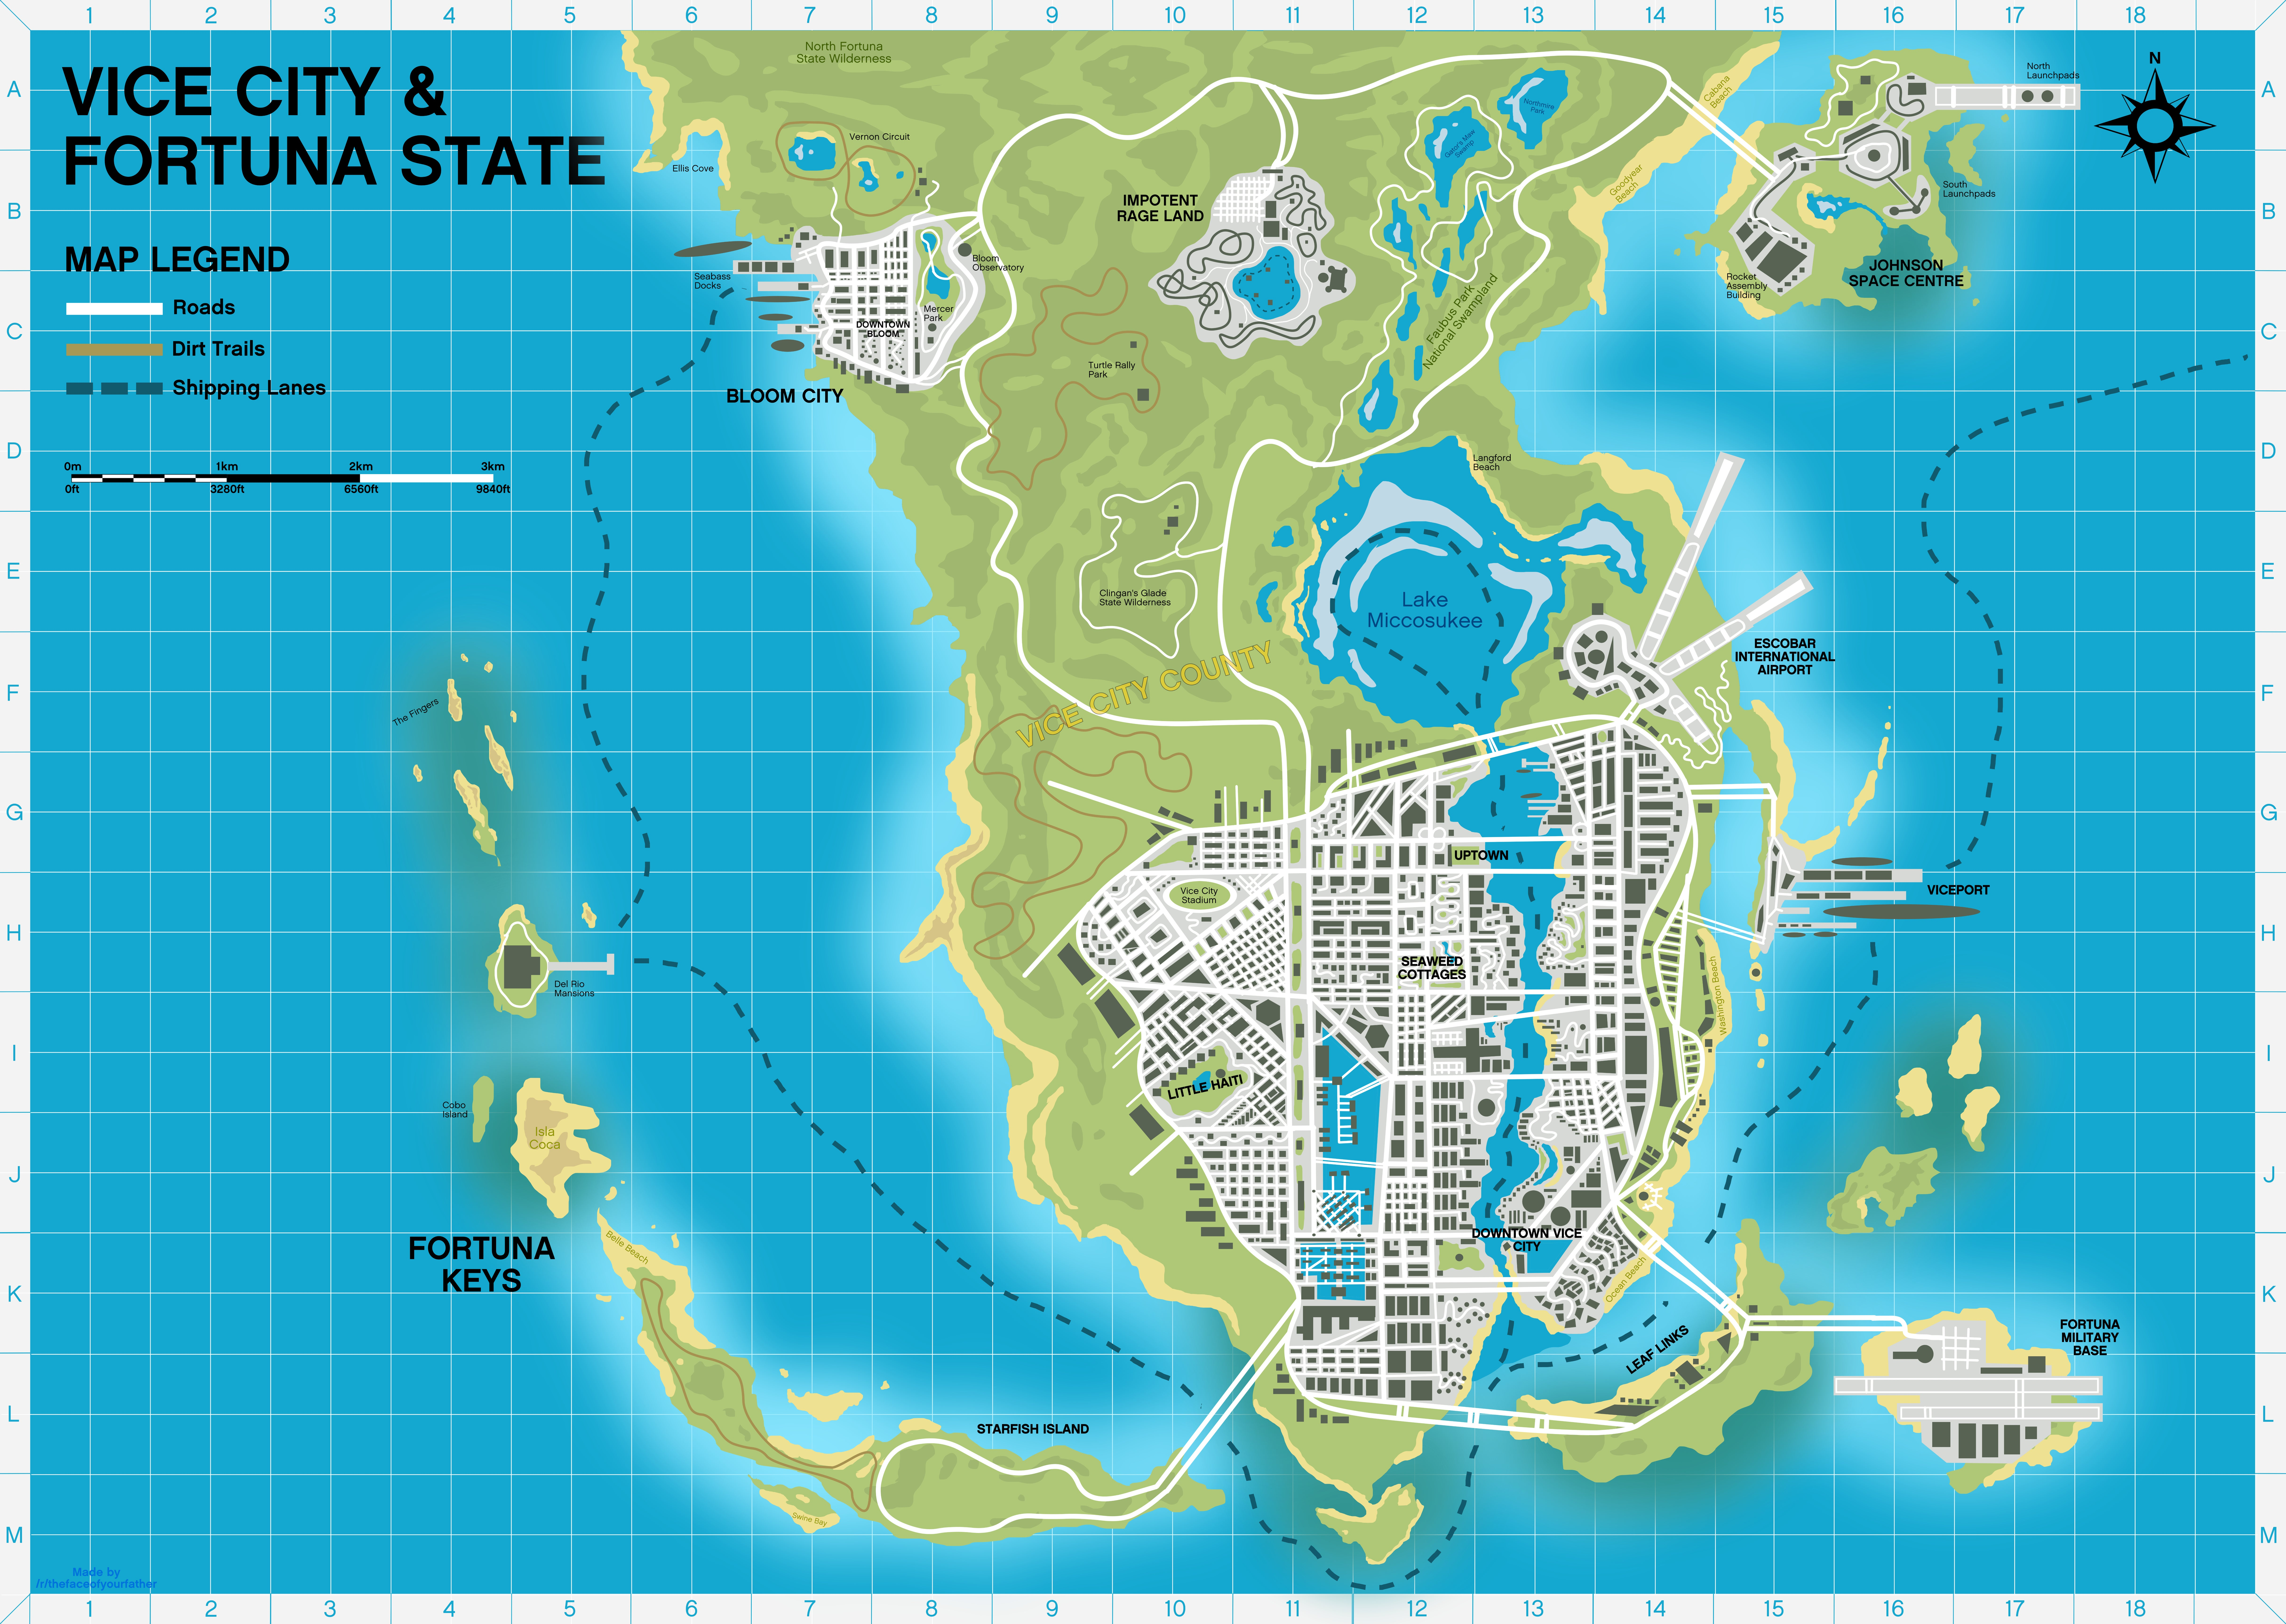 Afbeeldingen van GTA 6 map - In welke stad speelt Grand Theft Auto 6 zich af?